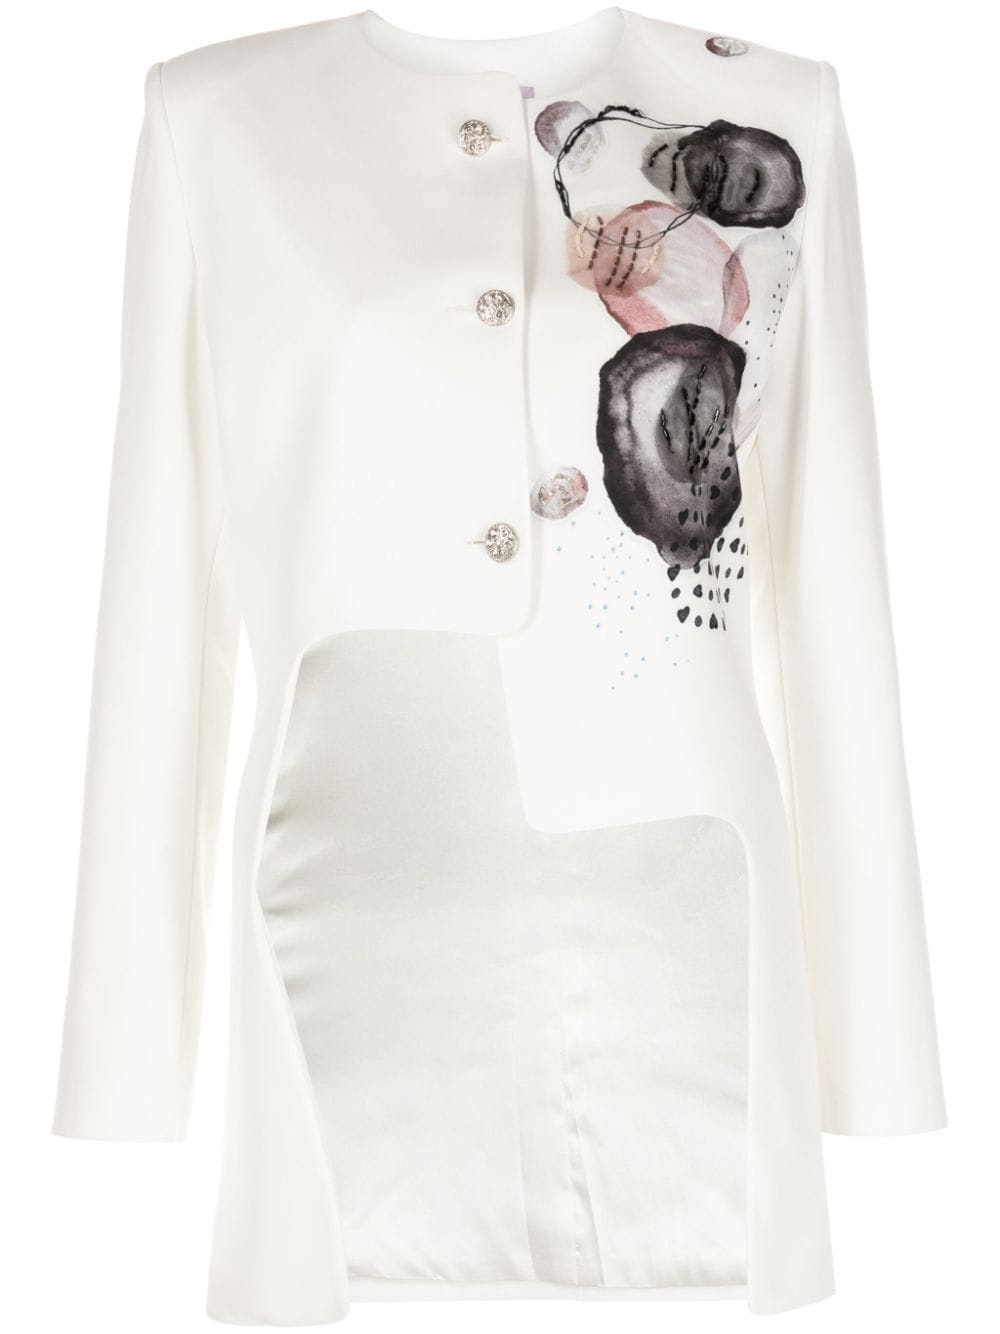 Saiid Kobeisy Asymmetrische Jacke mit Print - Weiß von Saiid Kobeisy